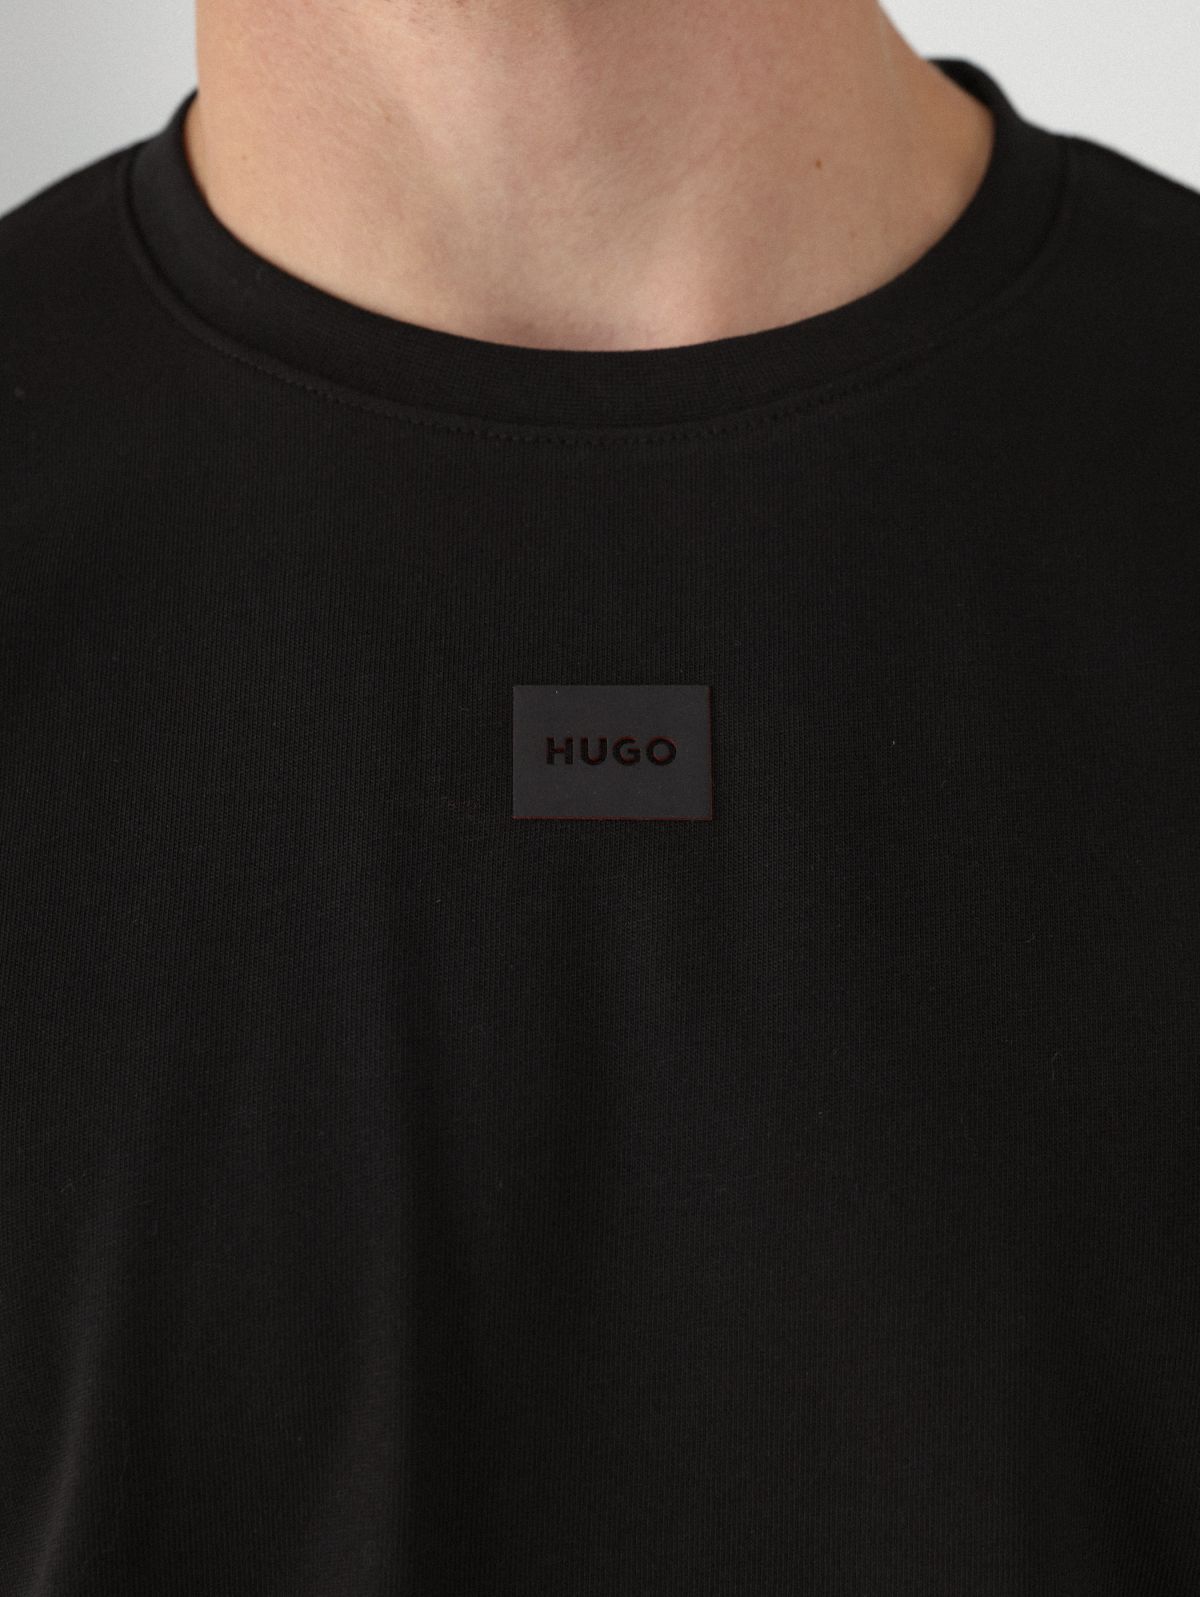  טי שירט עם תבליט לוגו של HUGO BOSS